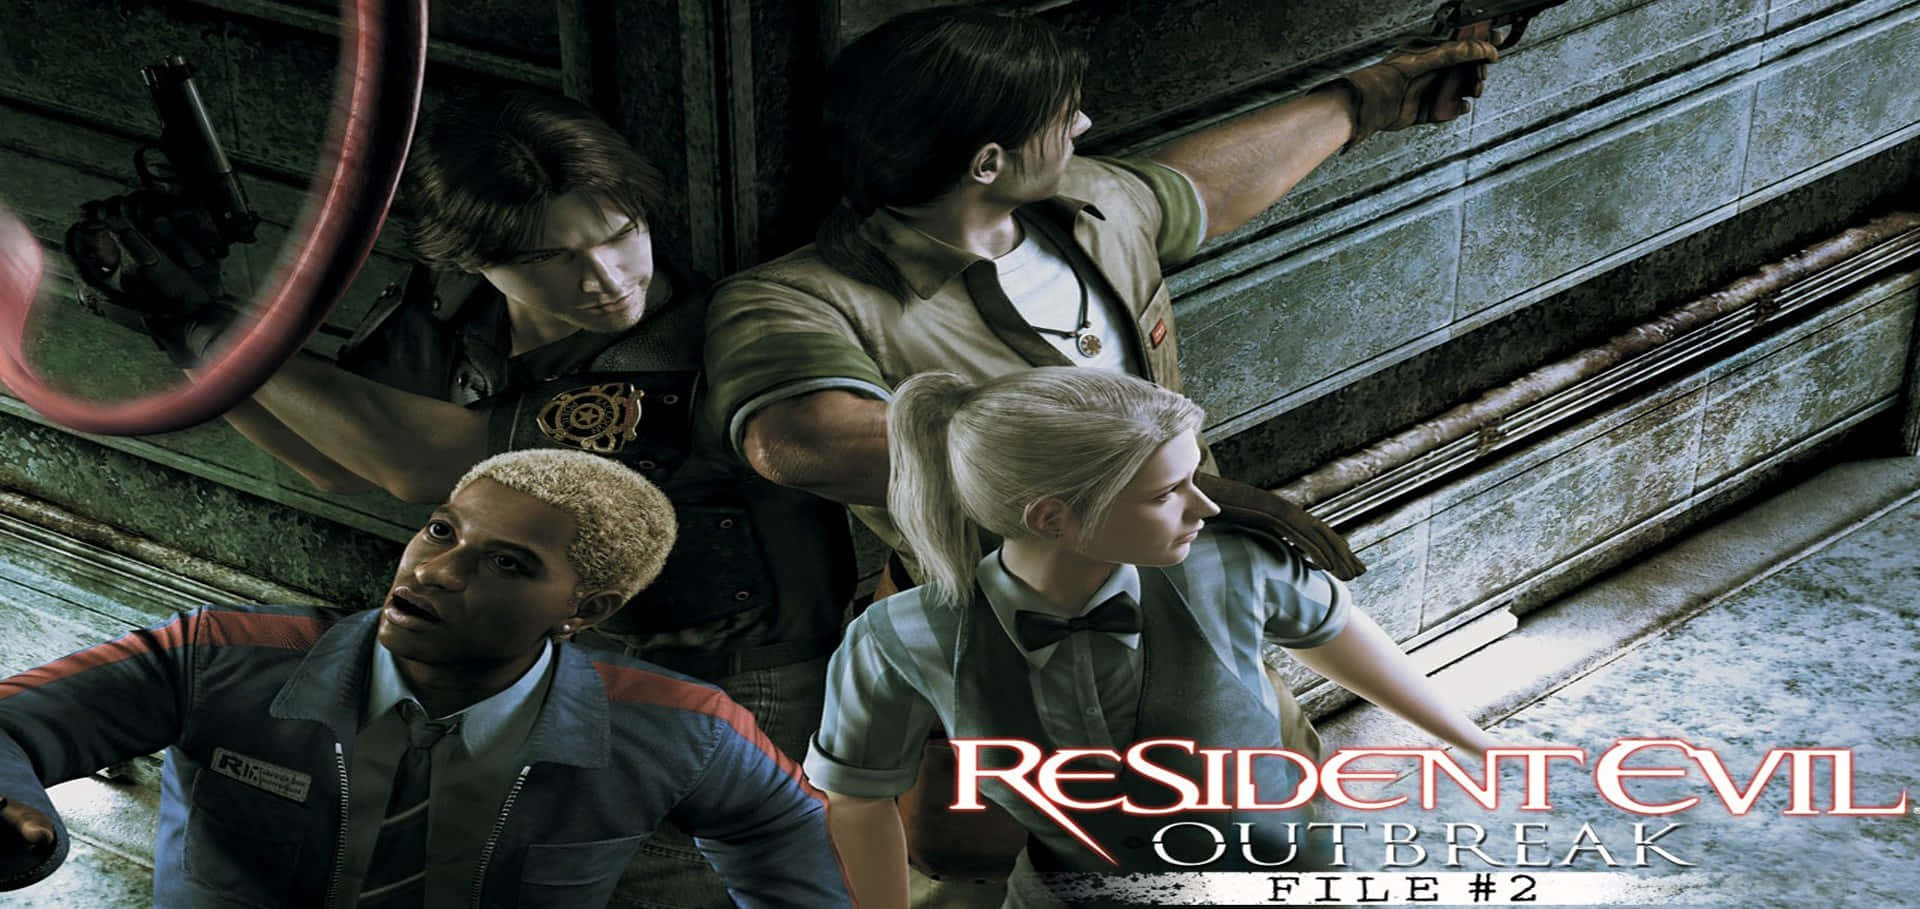 Resident Evil Outbreak File 2 Wallpaper